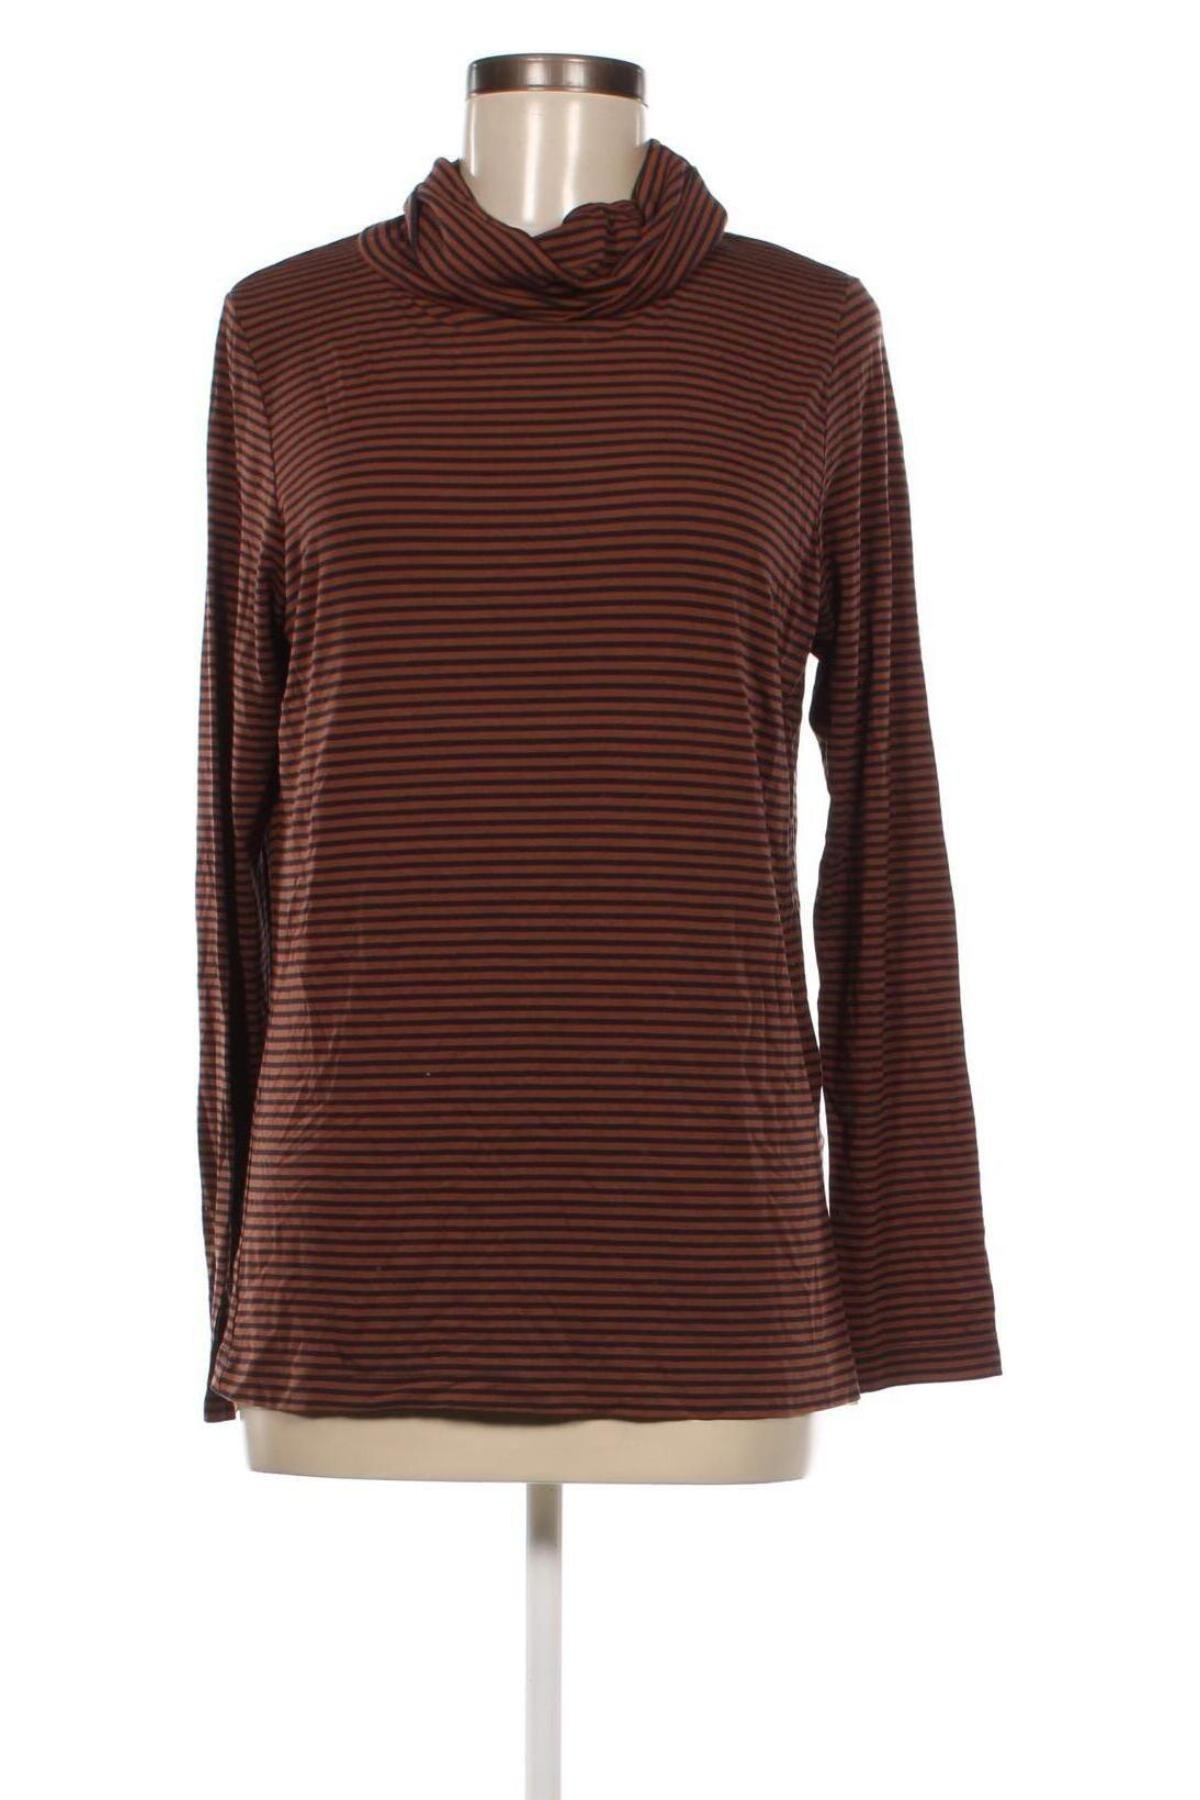 Γυναικεία μπλούζα Stooker, Μέγεθος M, Χρώμα Πολύχρωμο, Τιμή 4,35 €